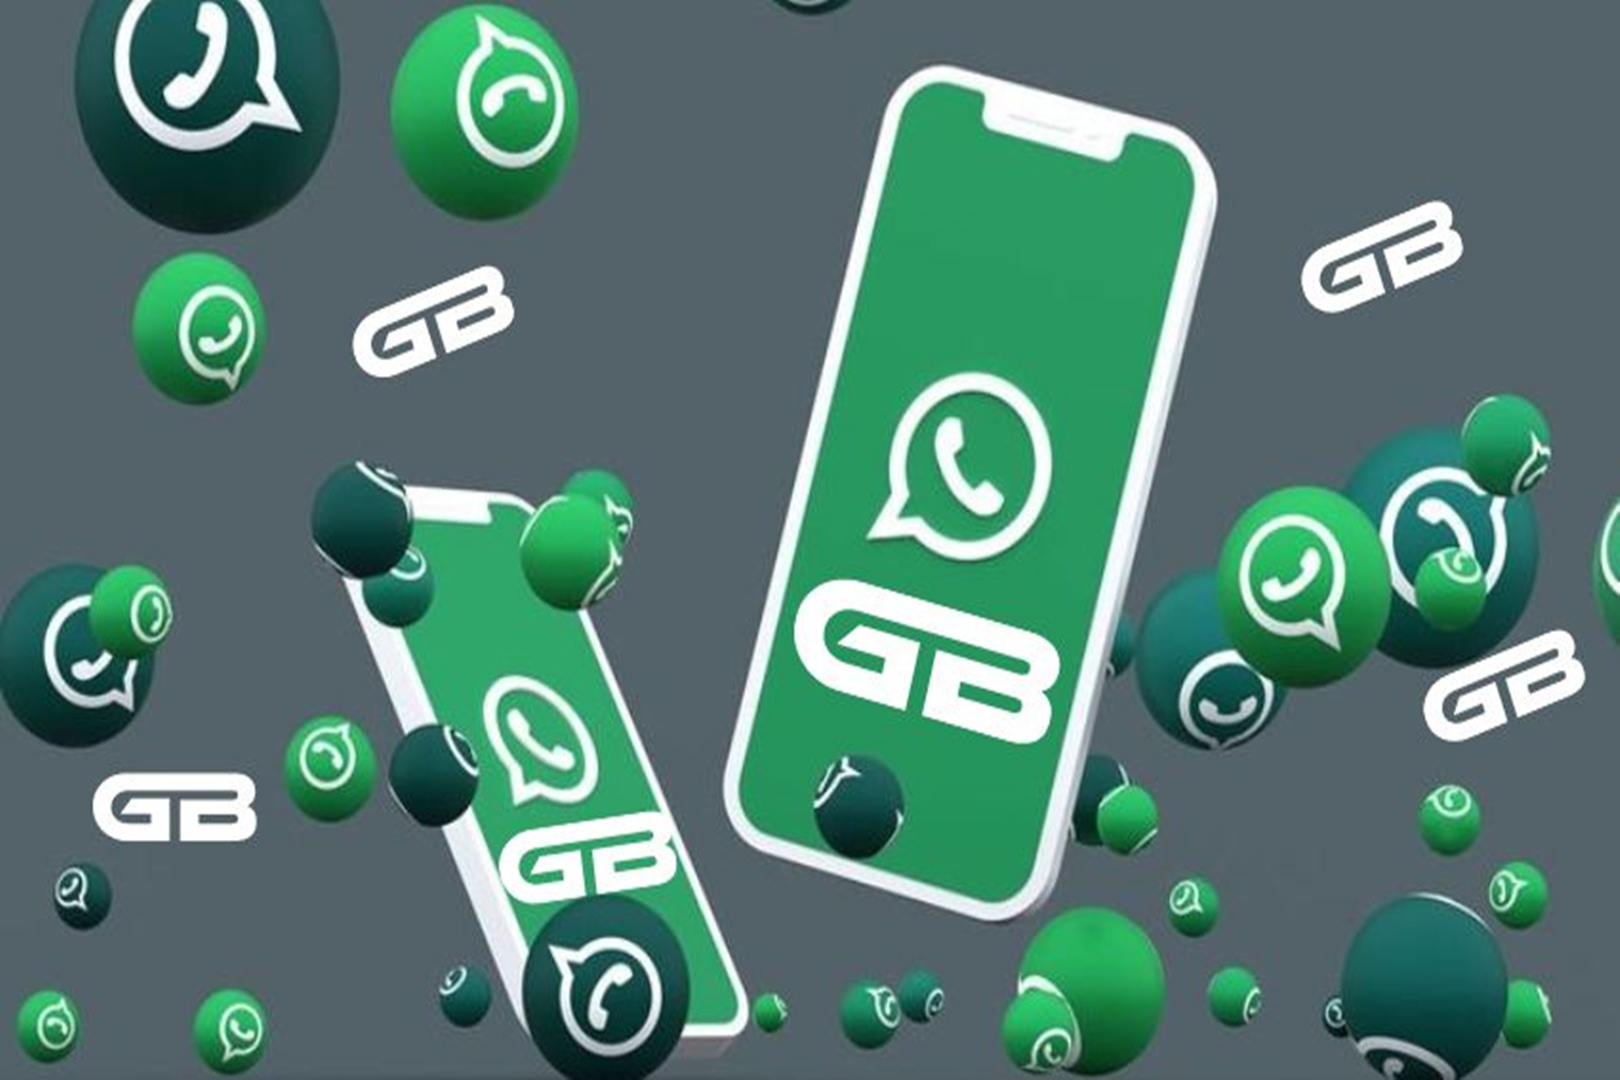 GB WhatsApp Pro Gratis Terbaru v13.50 : Aman Tanpa Iklan dan Anti Blokir!